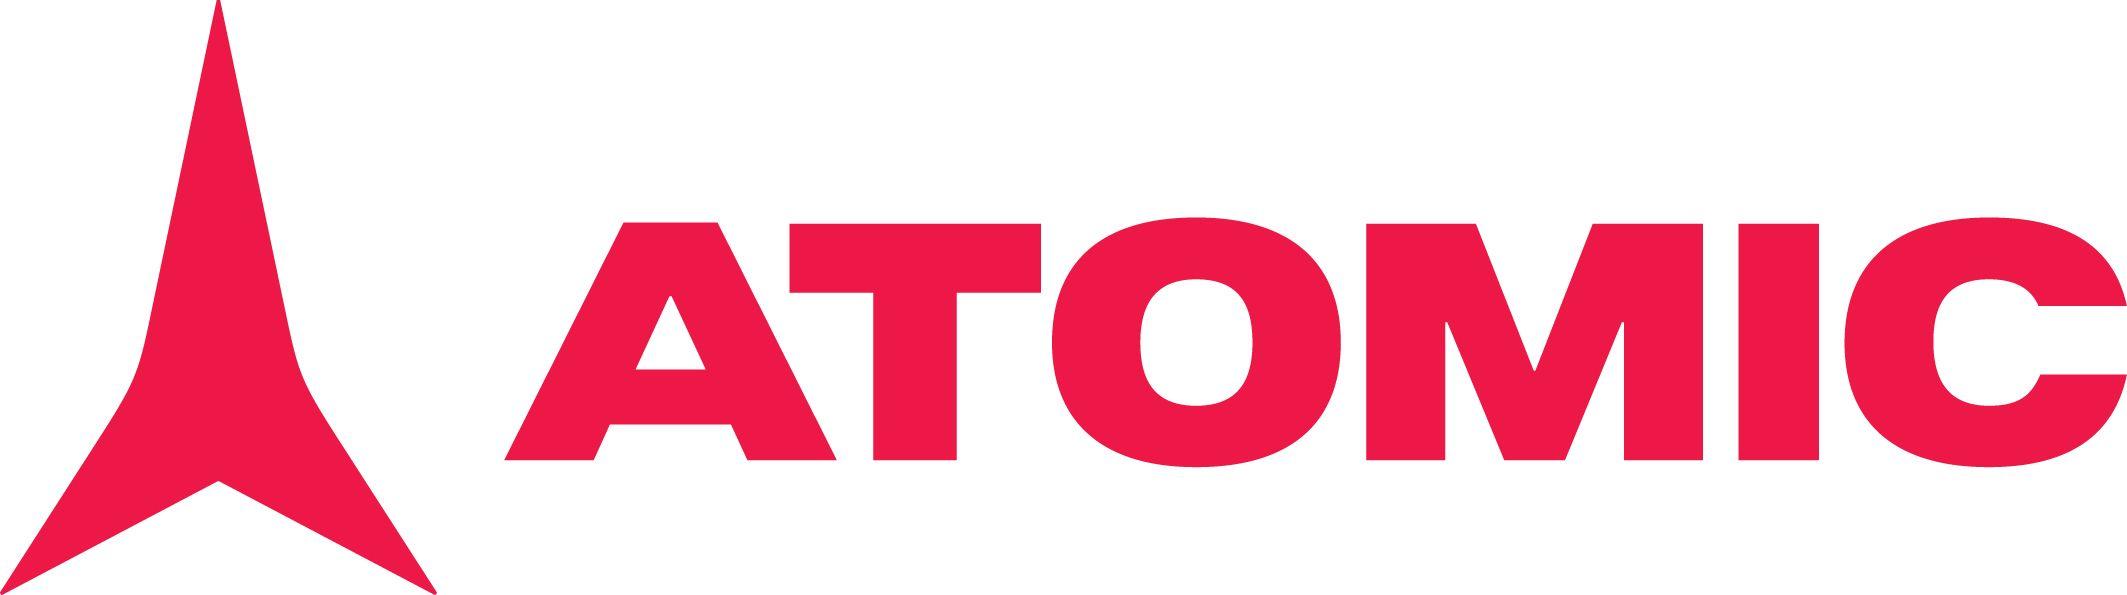 Atomic Logo - ATOMIC LOGO